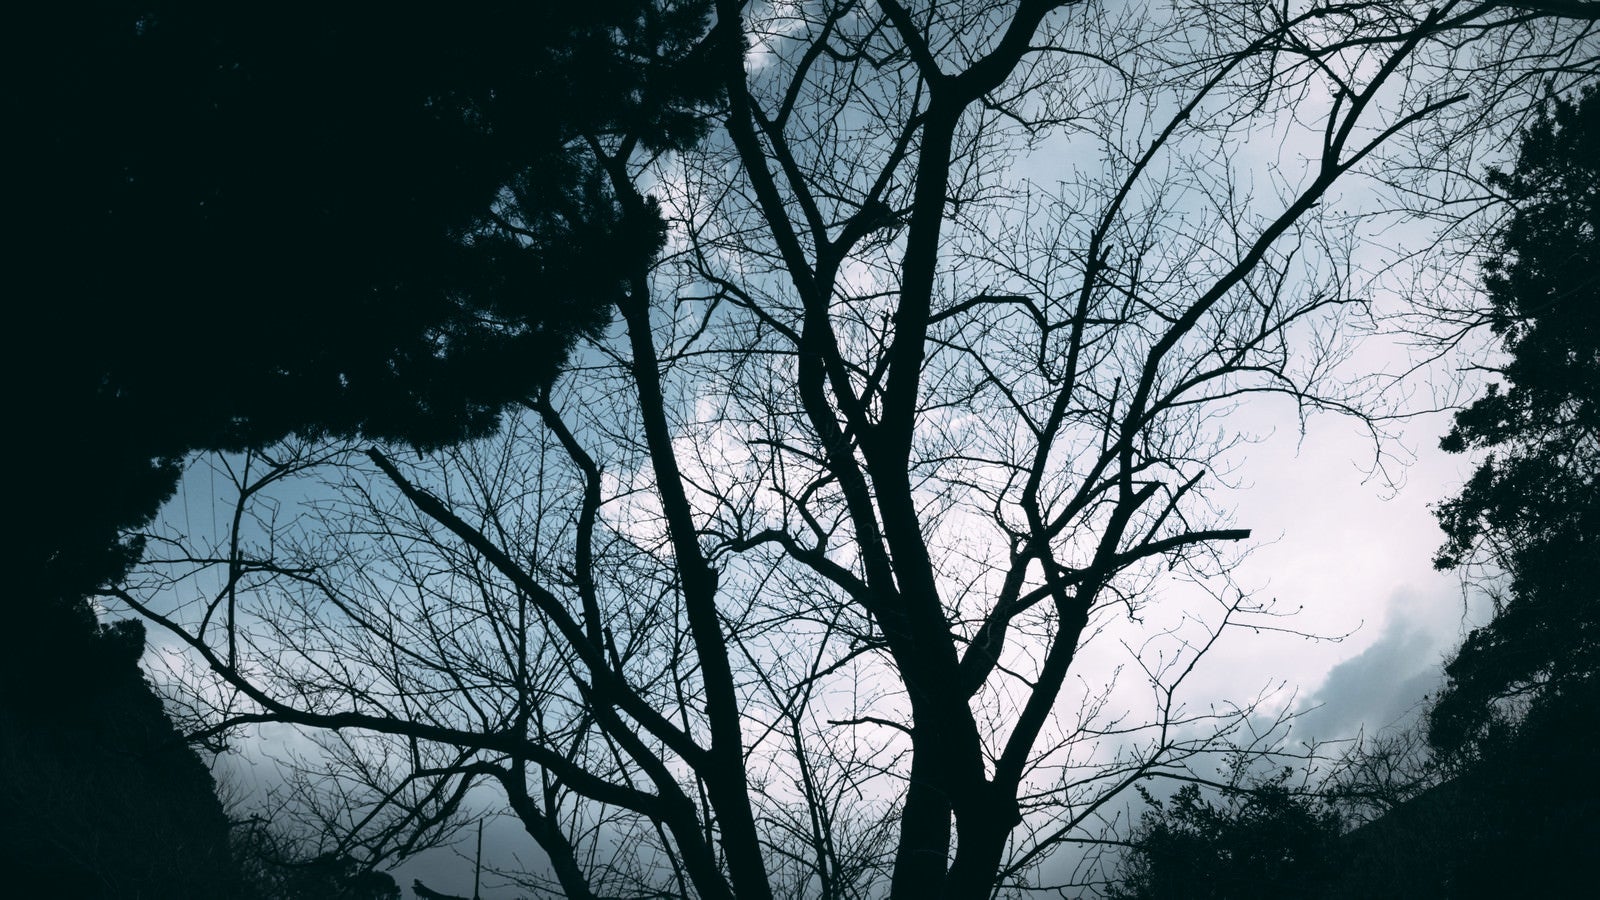 「空に映る木と森の影絵」の写真